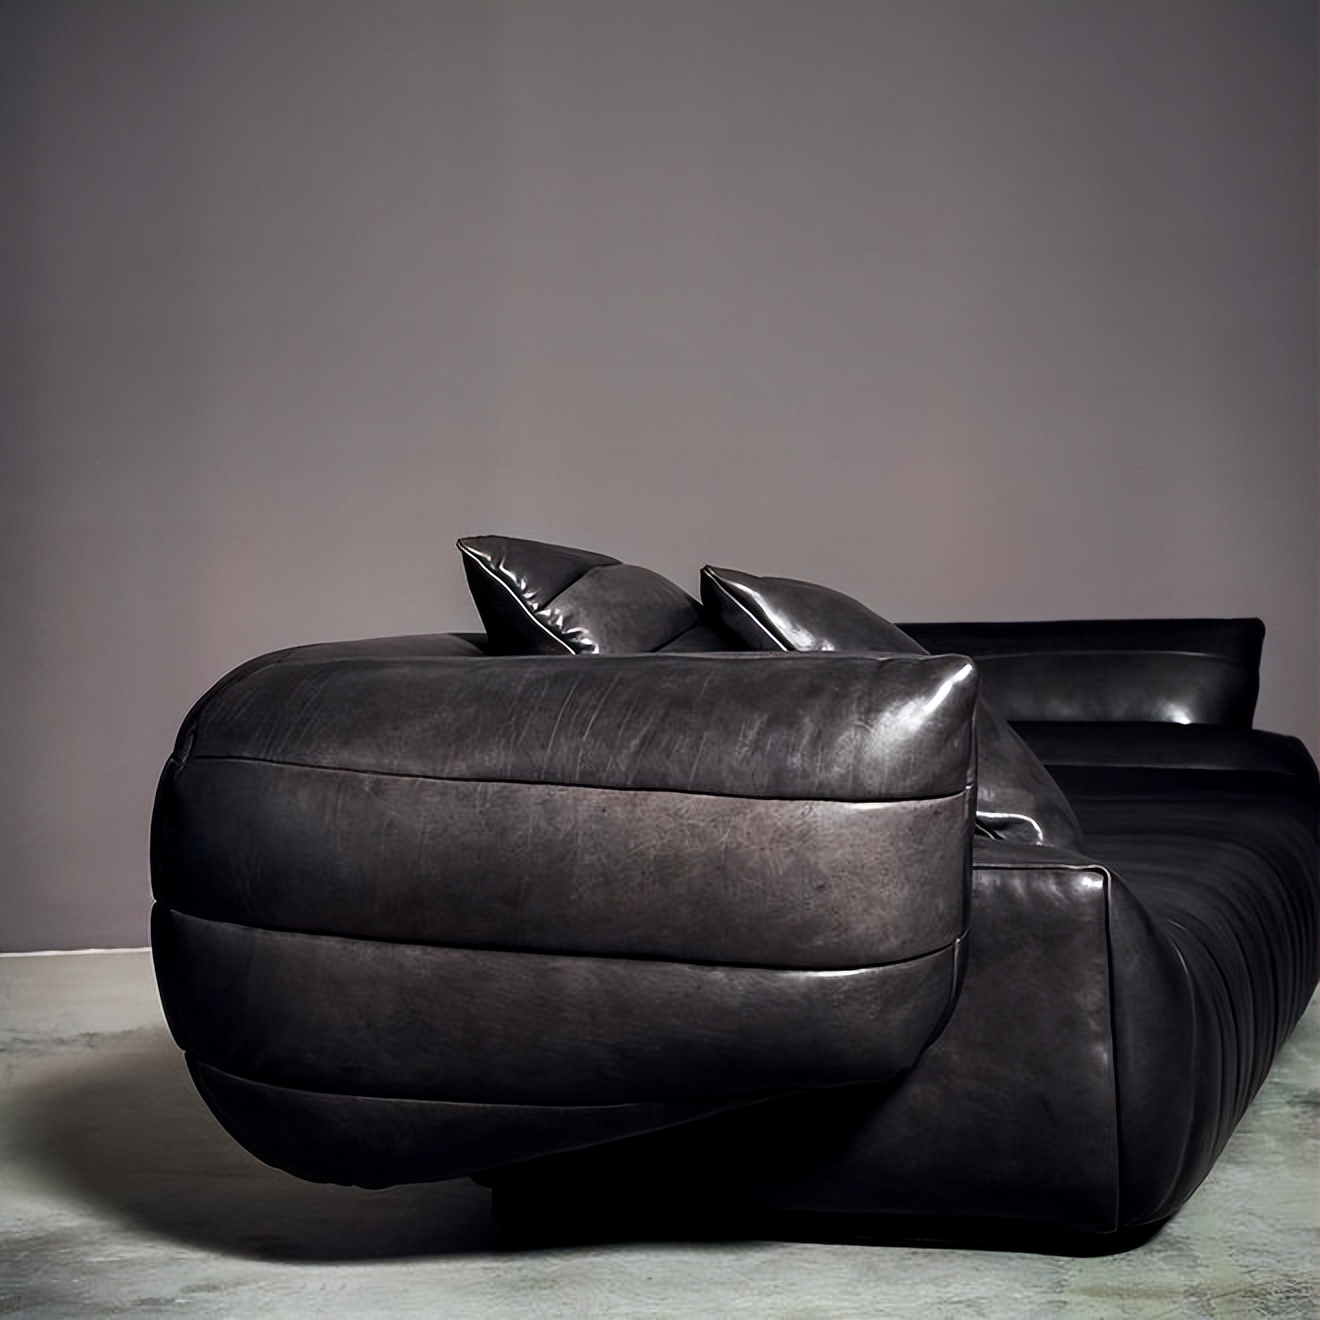 意大利进口家具Baxter网红沙发“香蕉船”设计欣赏